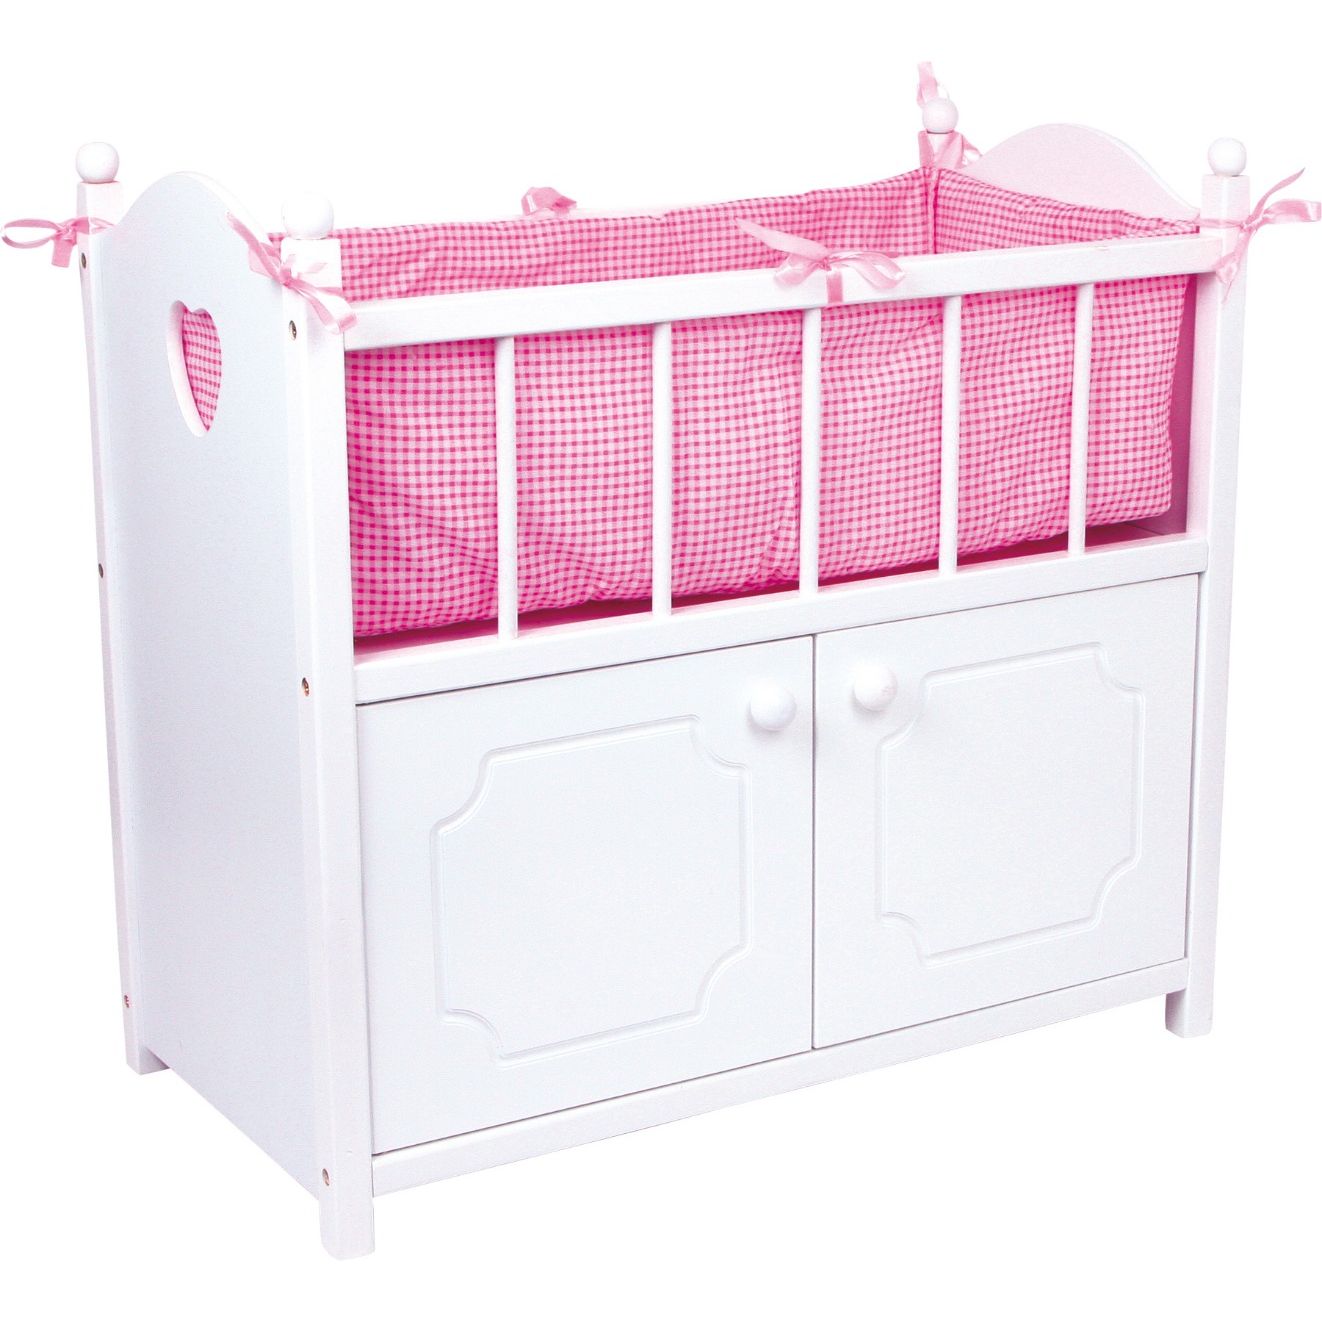 Engelhart - Muebles de Madera para muñecas bebé - Muebles y Accesorios a  Juego - Cama, Trona, literas, Cuna, Cambiador, cómoda - Rosa y Blanco (Cuna)